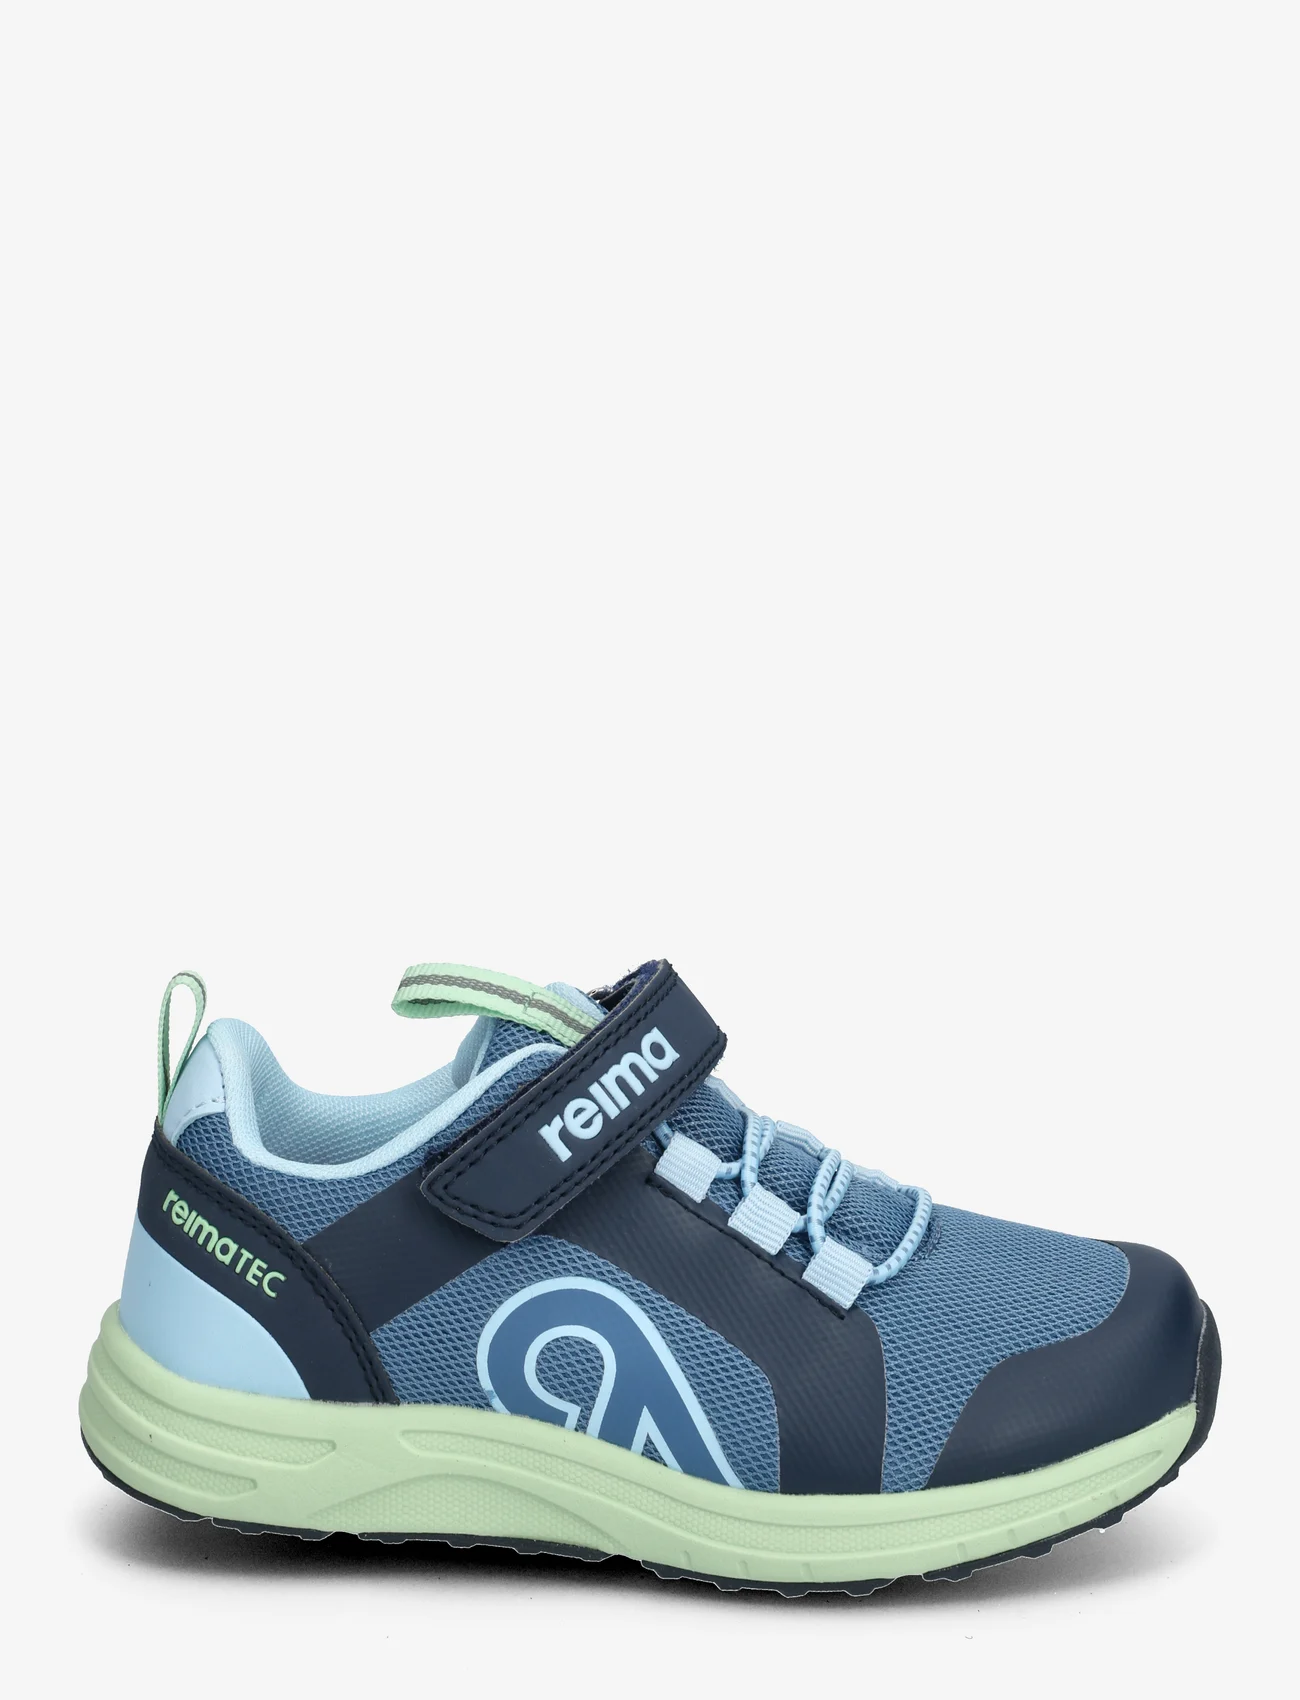 Reima - Reimatec shoes, Enkka - lapsed - blue ocean - 1